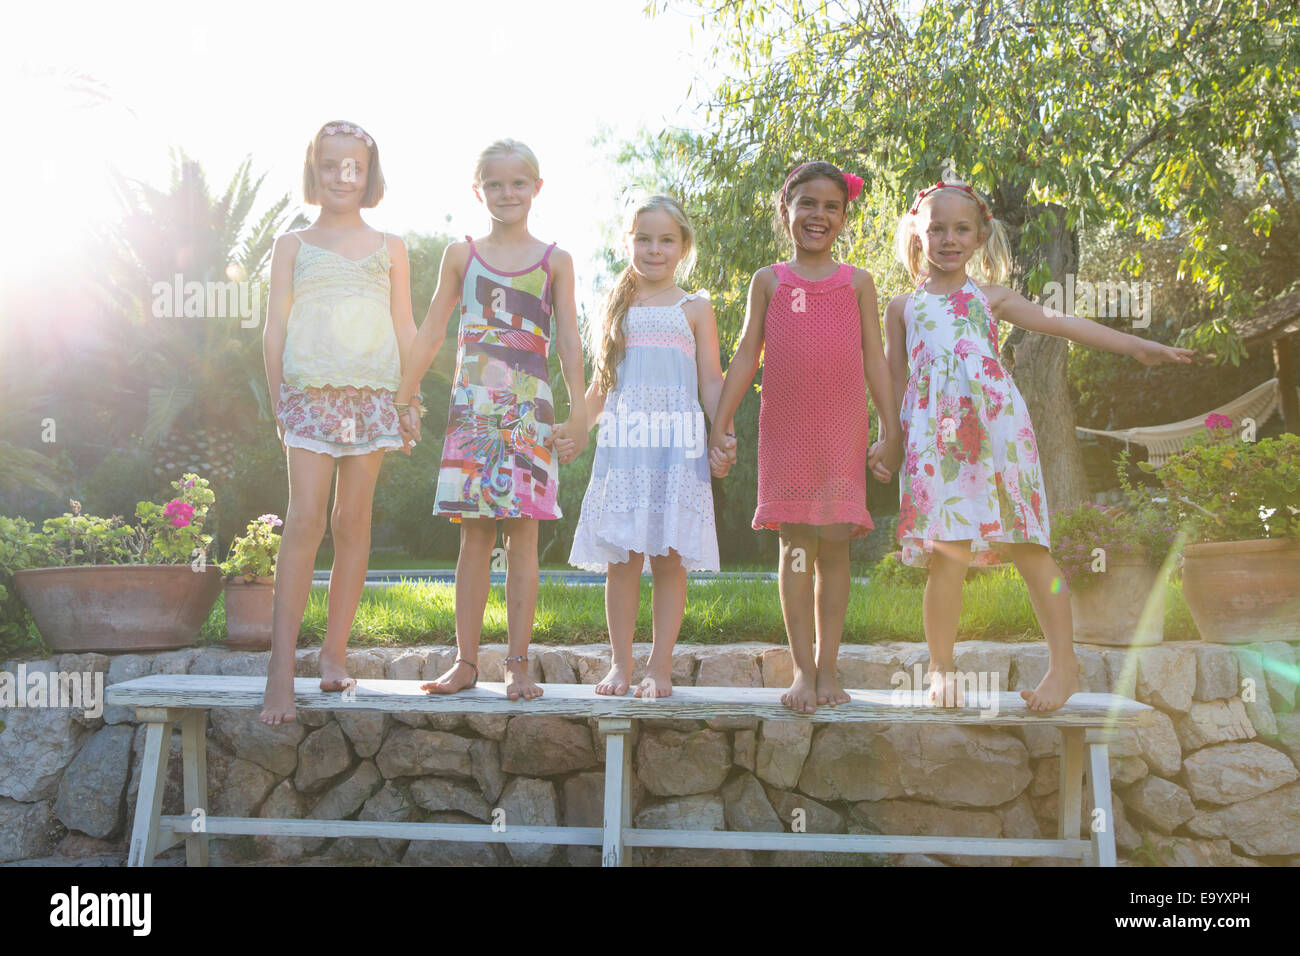 Ritratto di cinque ragazze permanente sulla panchina da giardino Foto Stock